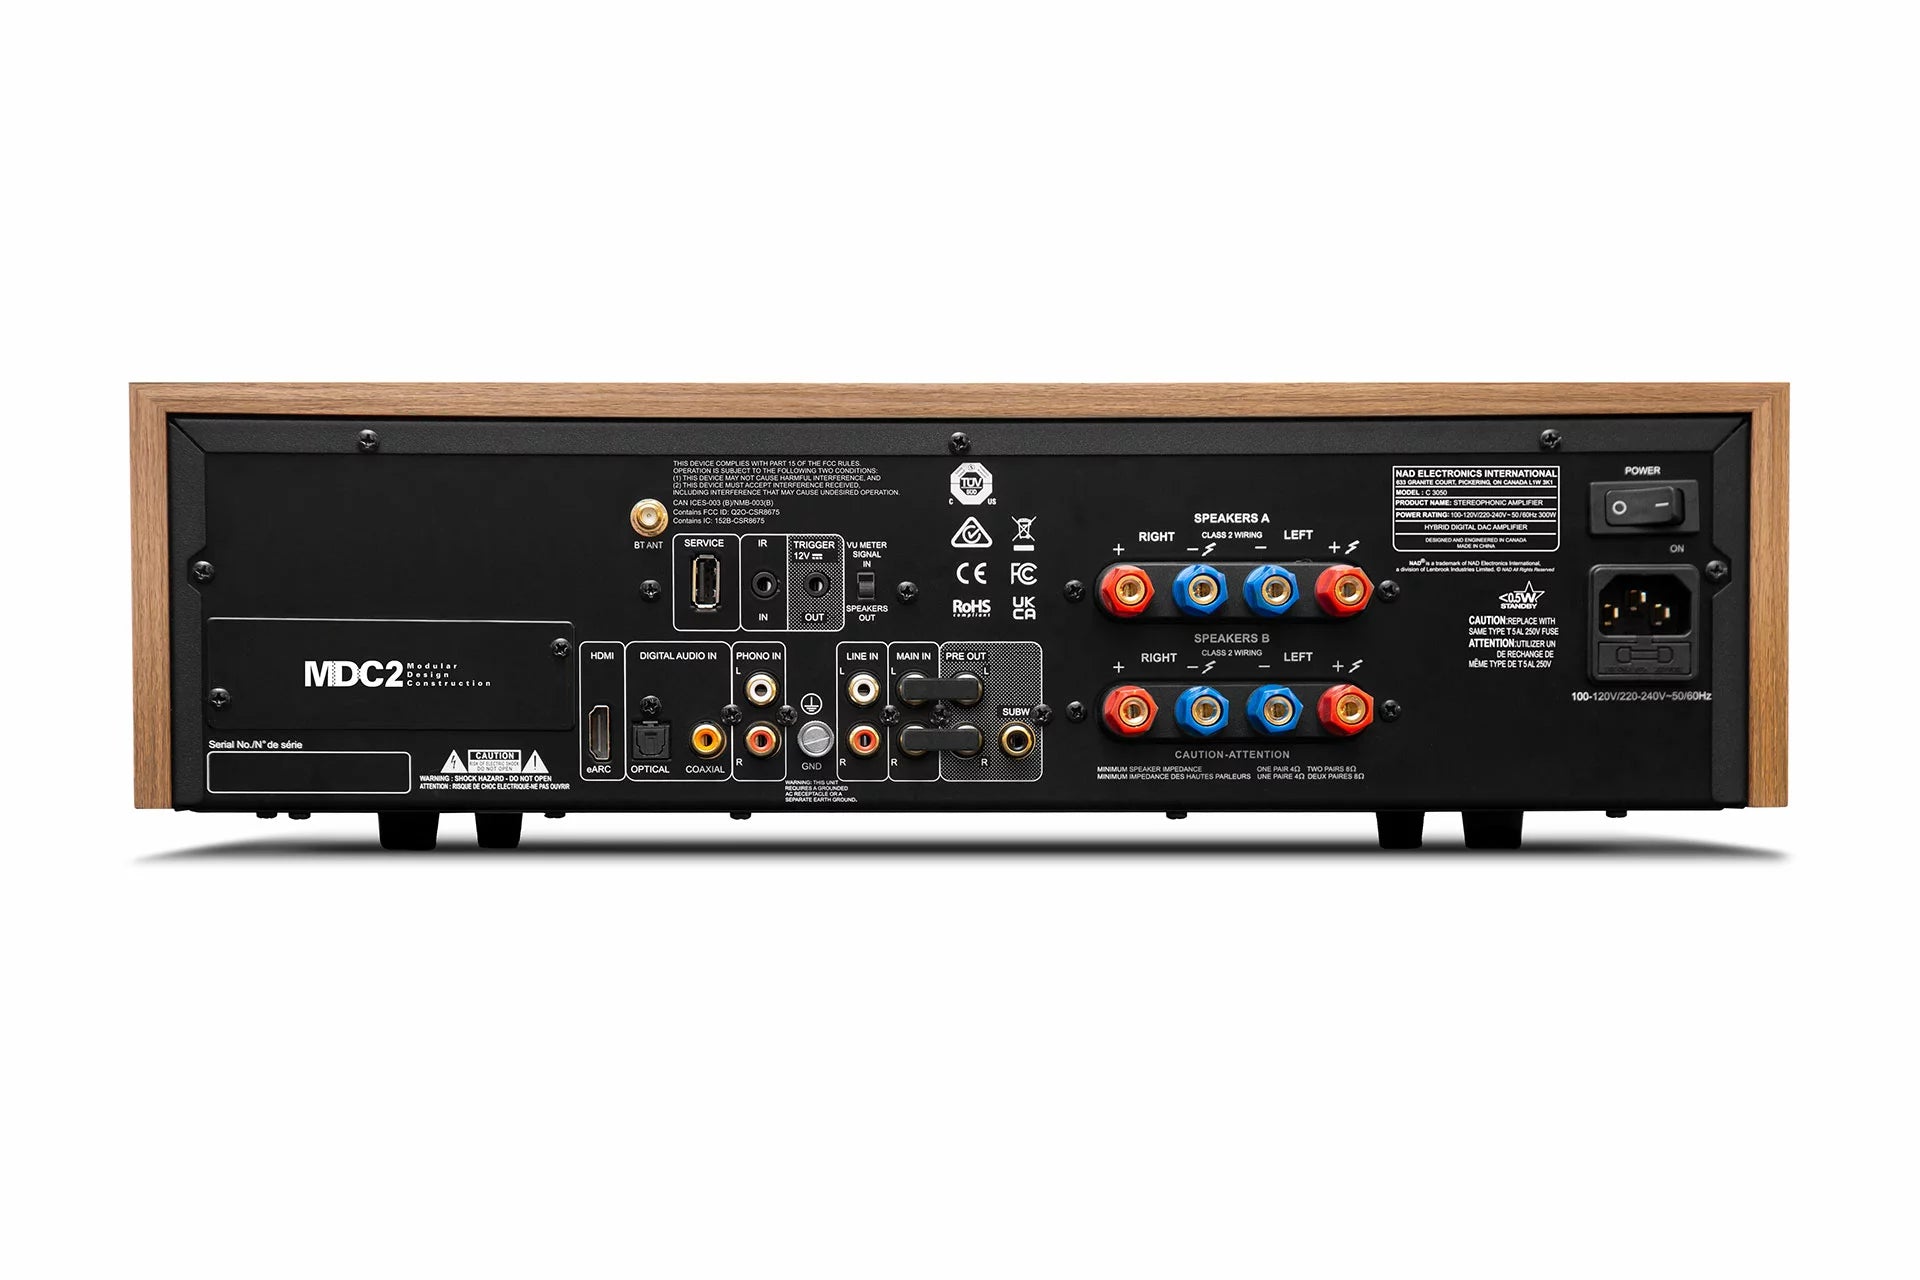 NAD C 3050 integrated vintage amplifier